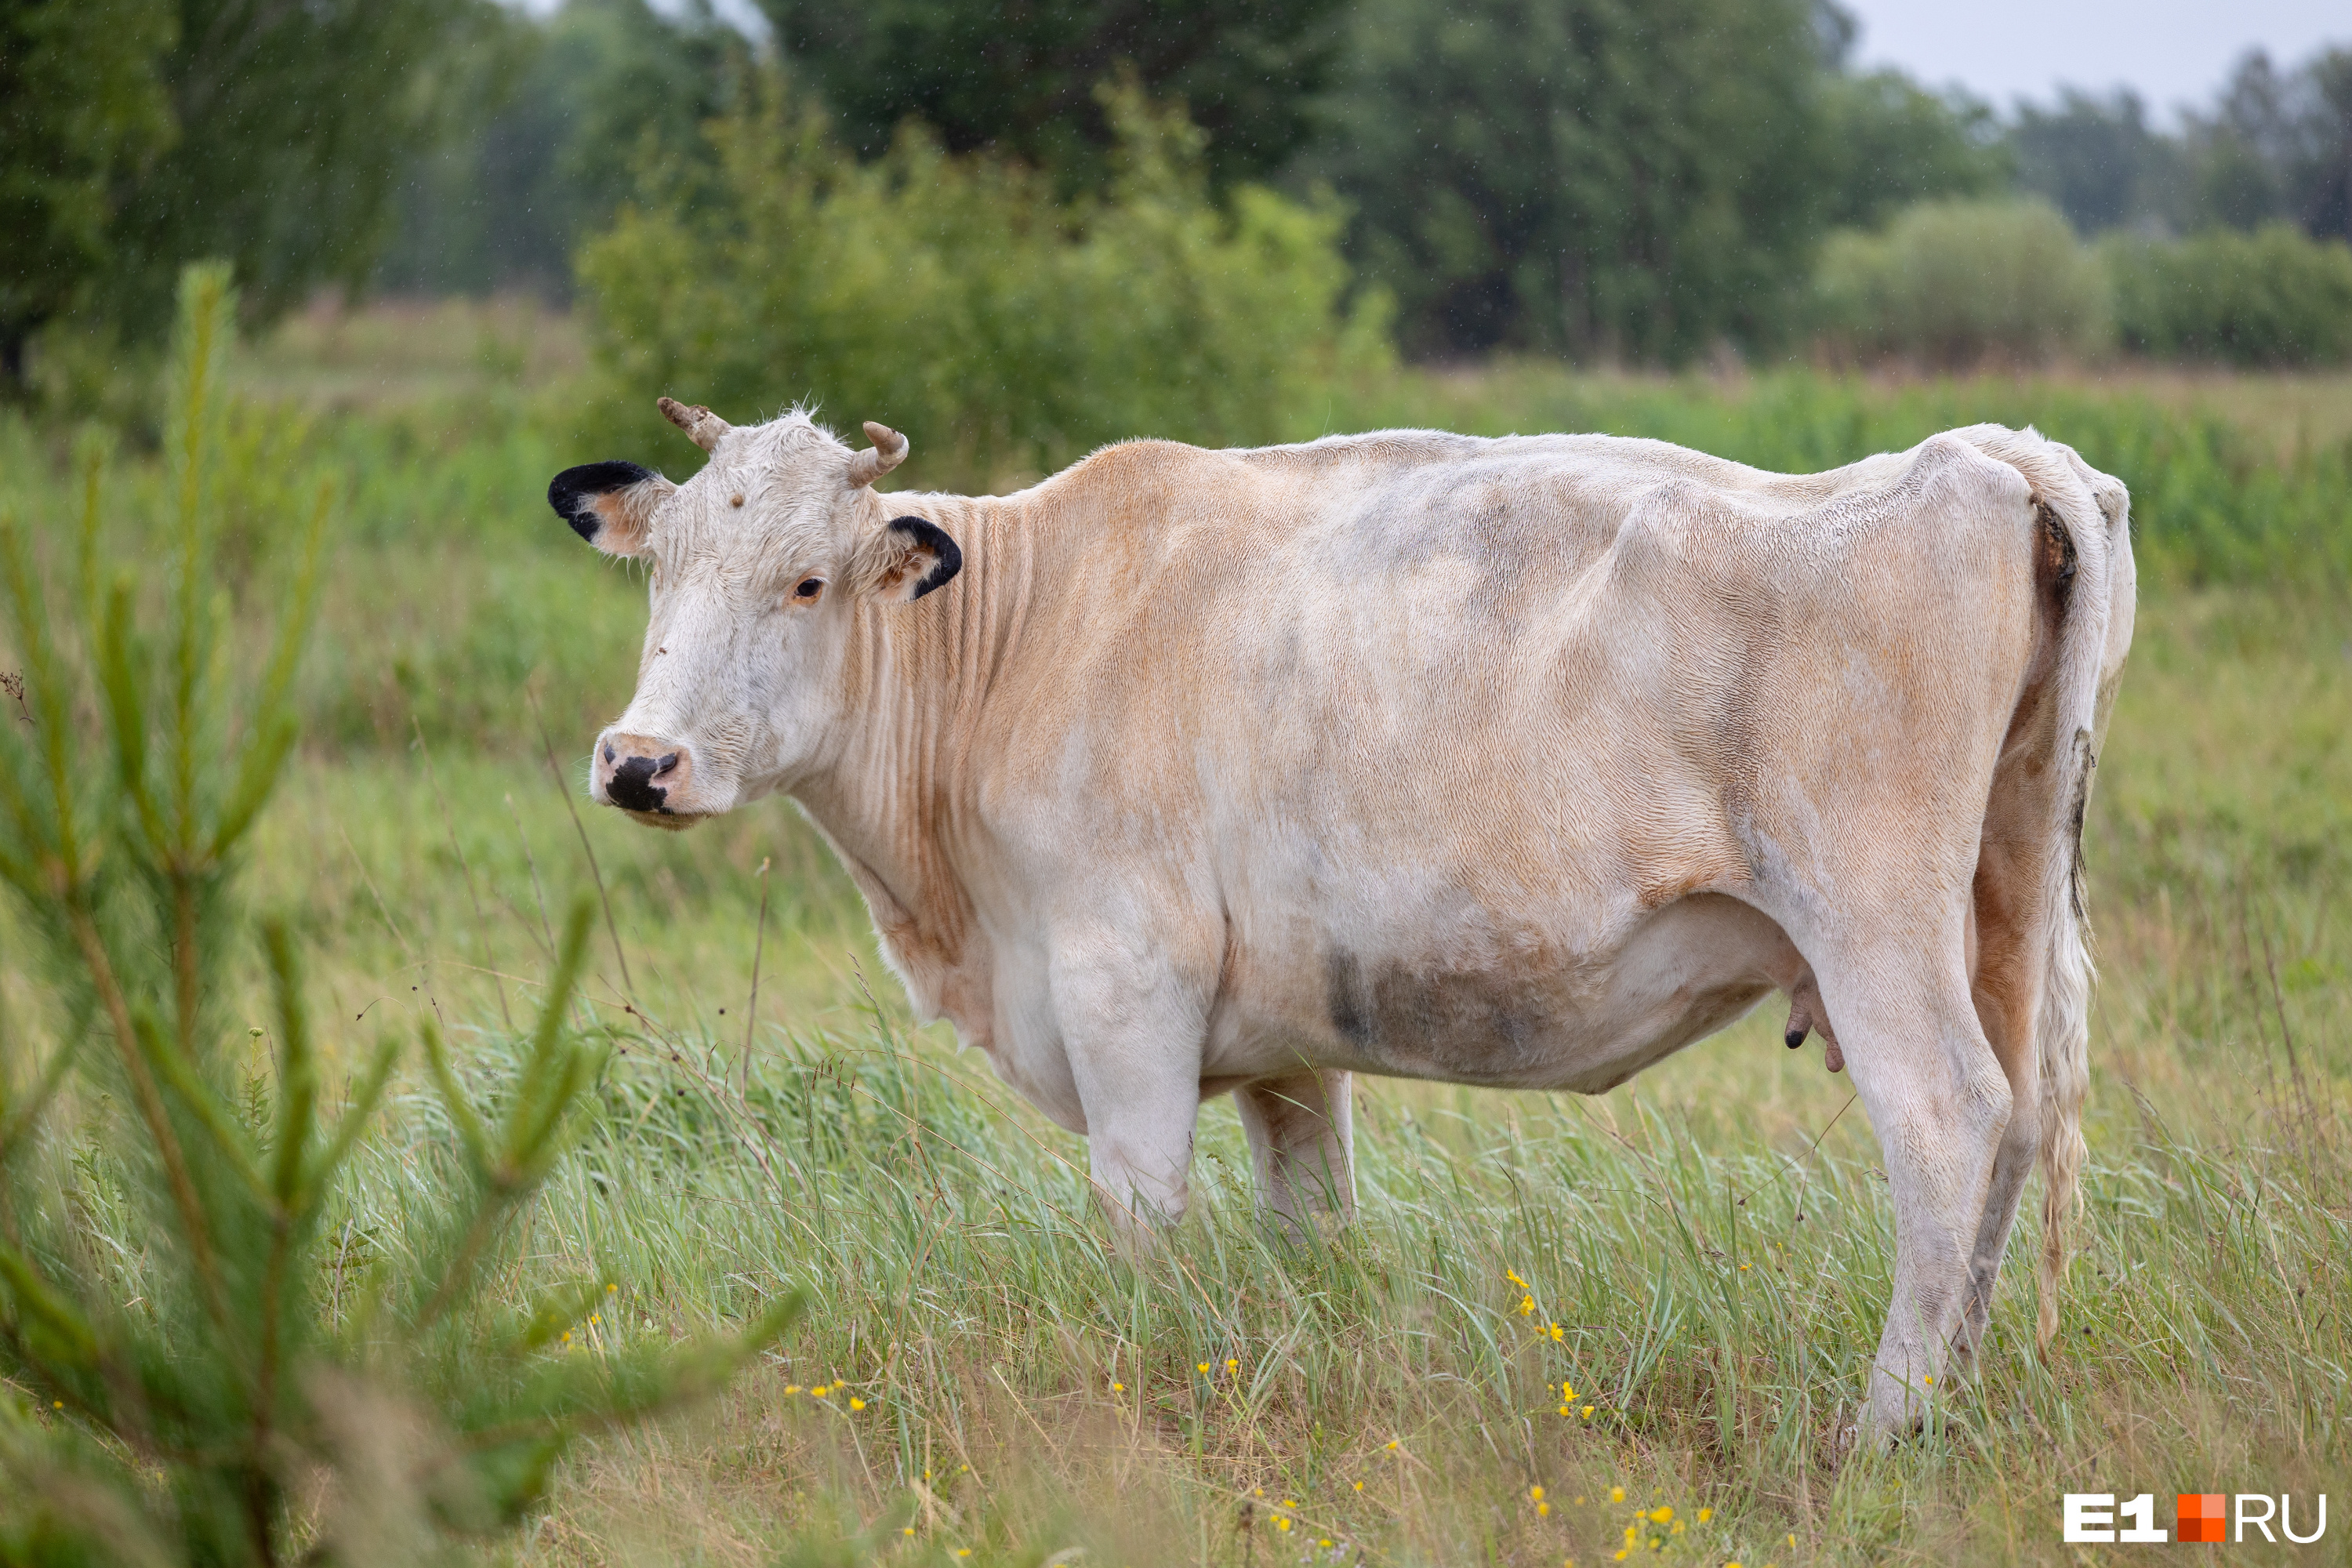 Рада — корова с необычным окрасом. Виктор выкупил ее одной из первых